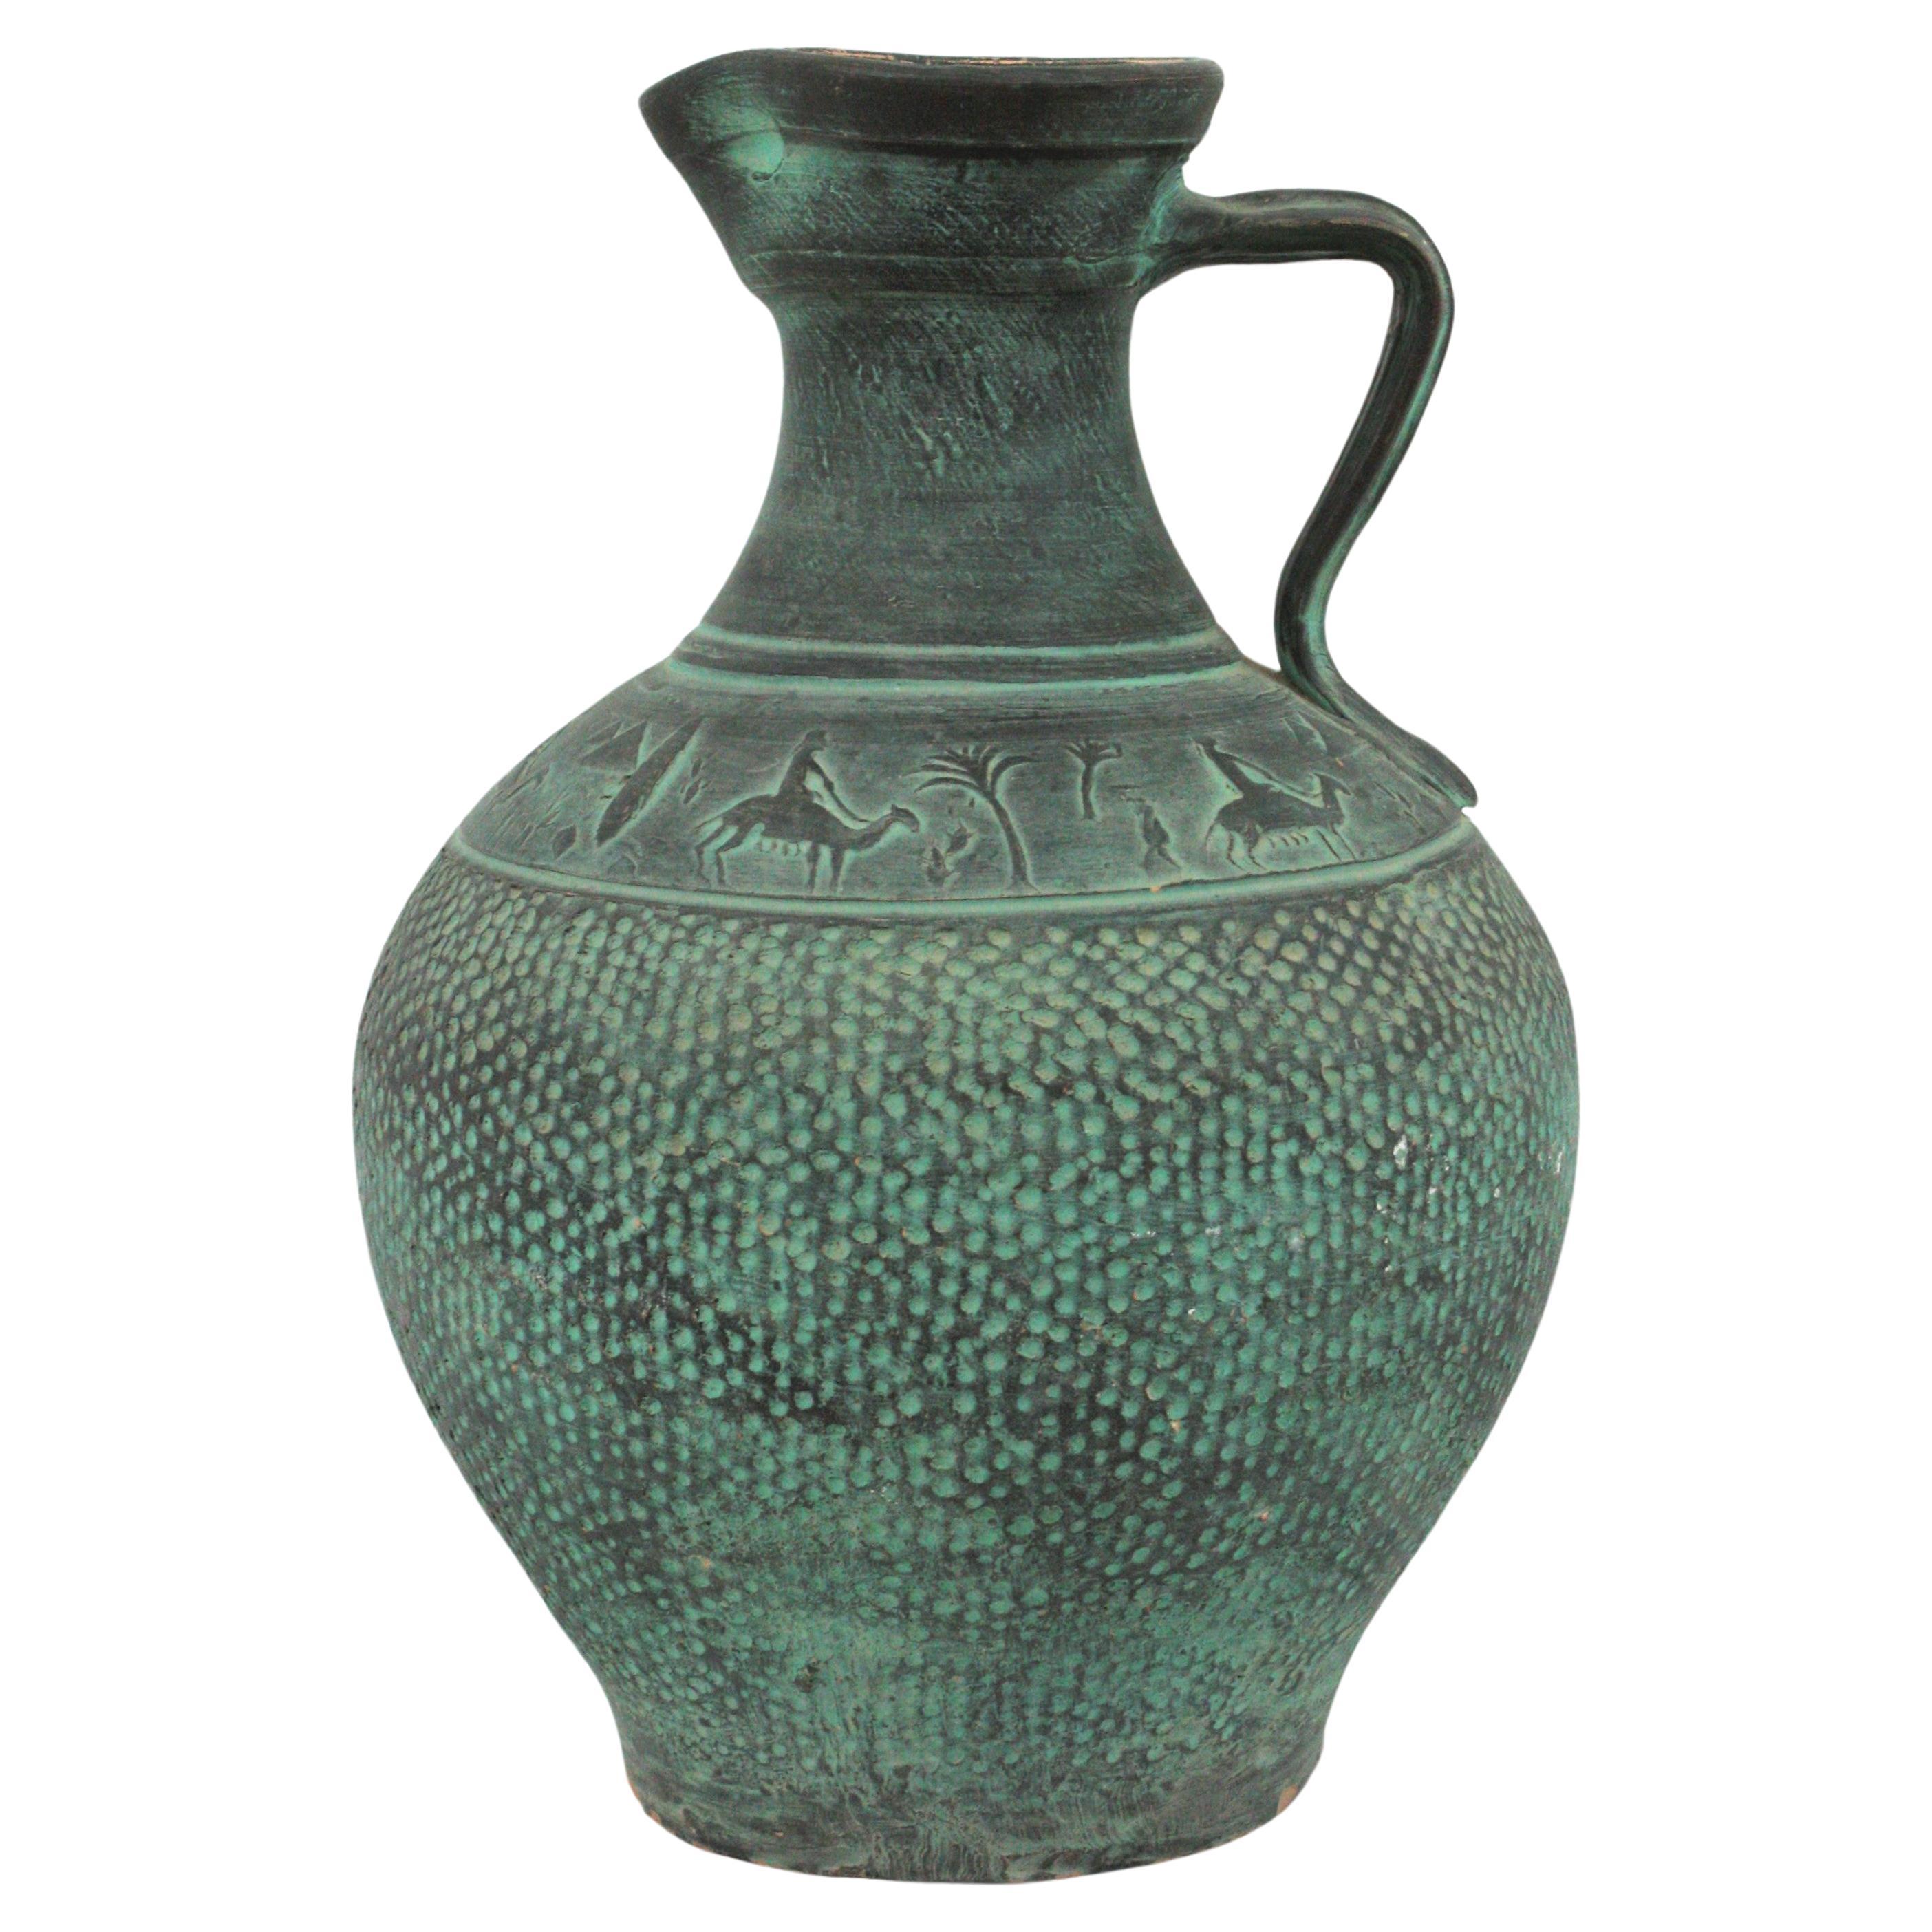 Spanische grüne Terracota Urne Krug oder Gefäß